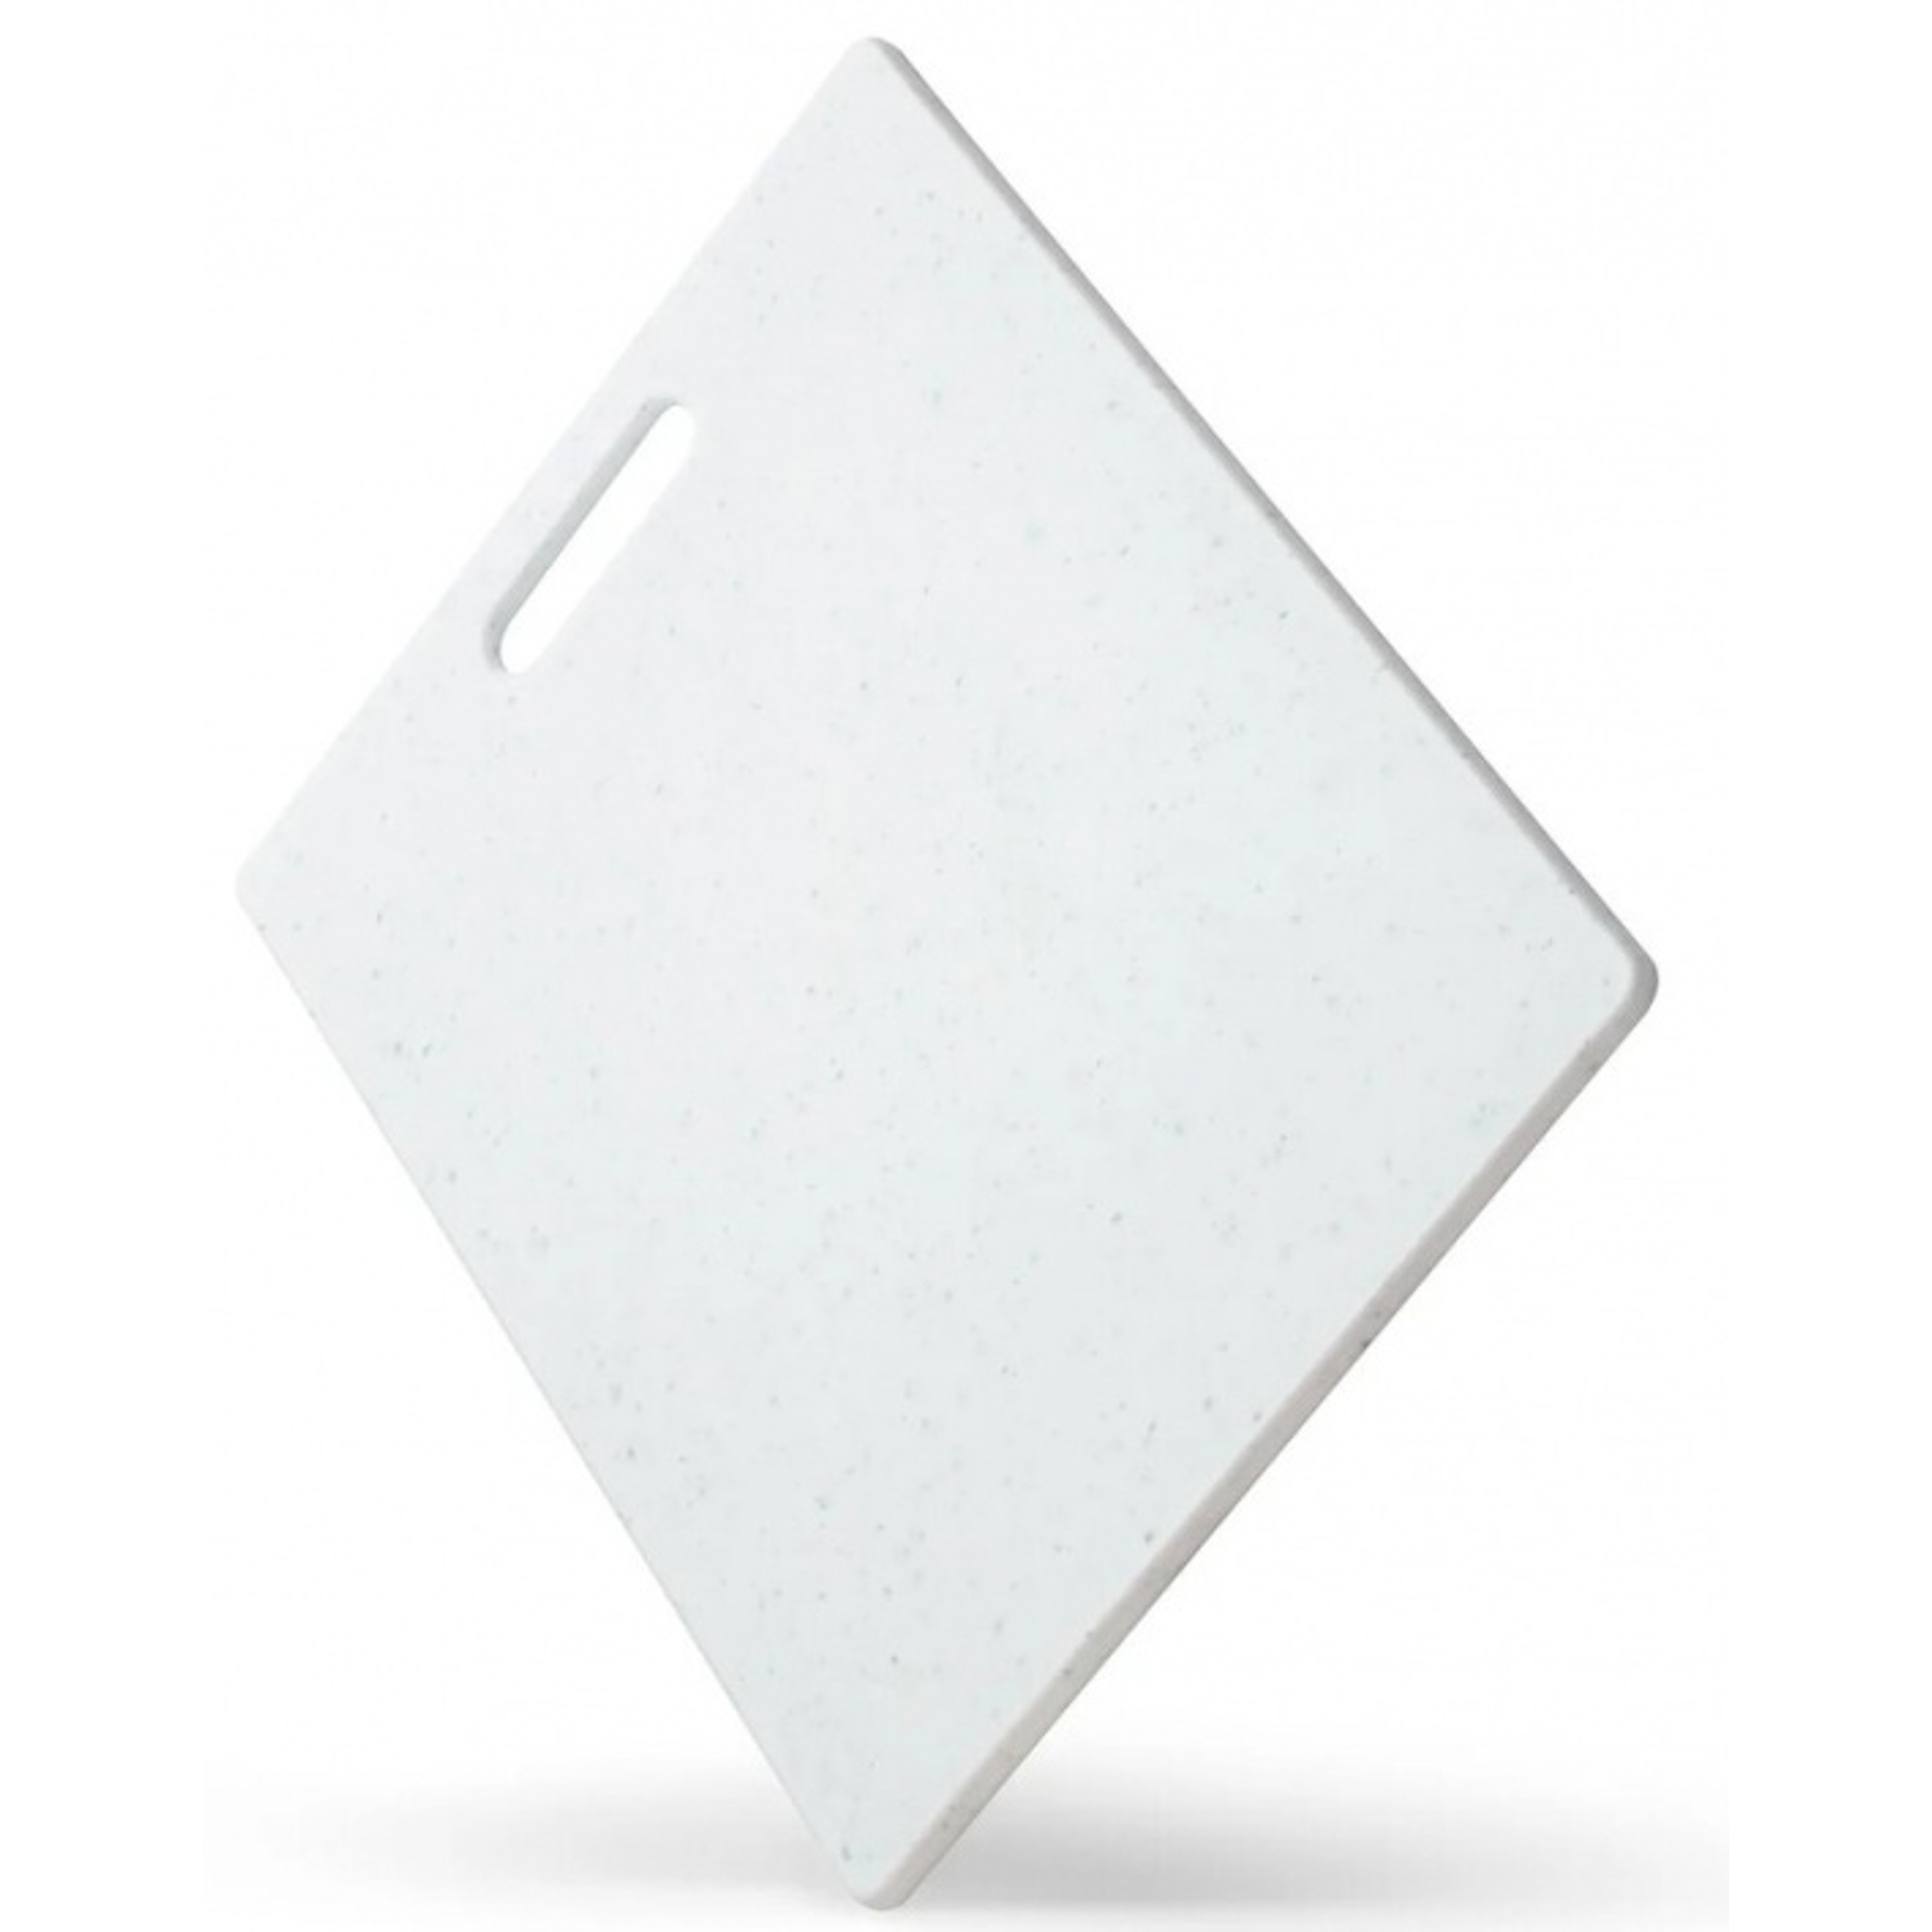 Доска Apollo stone 36.5x27.5x0.8 см, цвет белый - фото 1